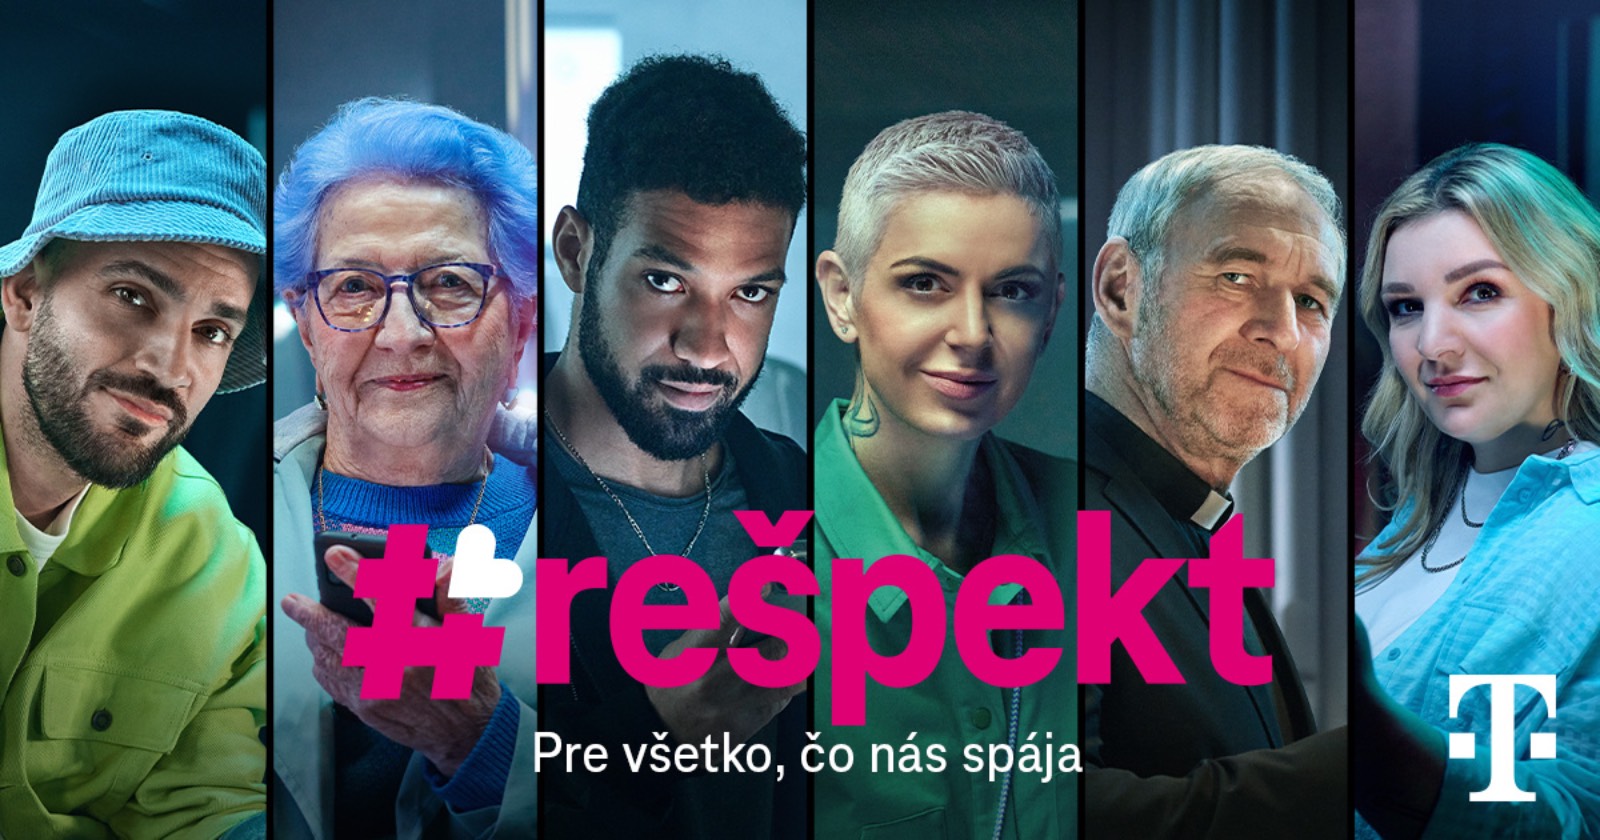 Telekom spustil novú kampaň. Spoločnosť by mal spájať vzájomný #rešpekt ...